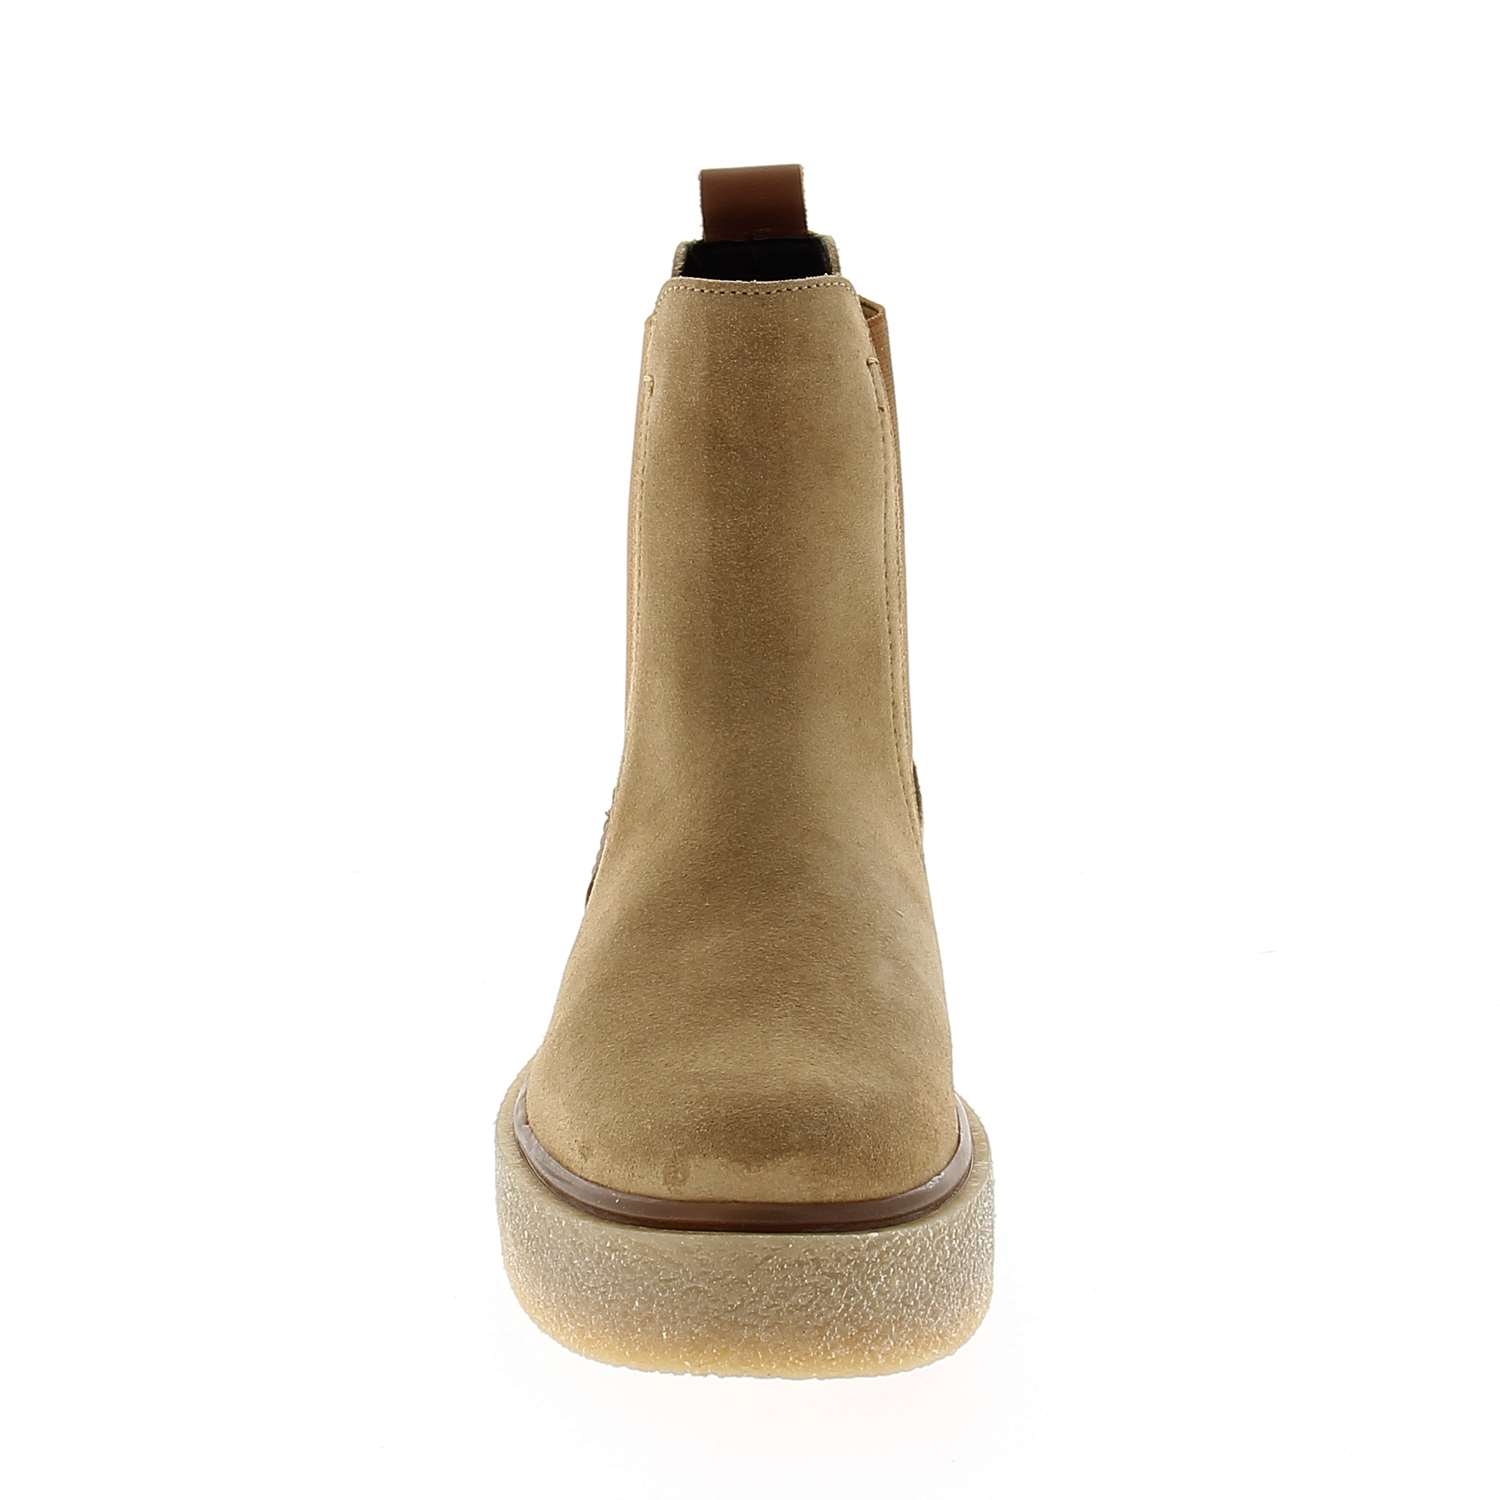 03 - MABEAU - MARCO TOZZI - Boots et bottines - Croûte de cuir